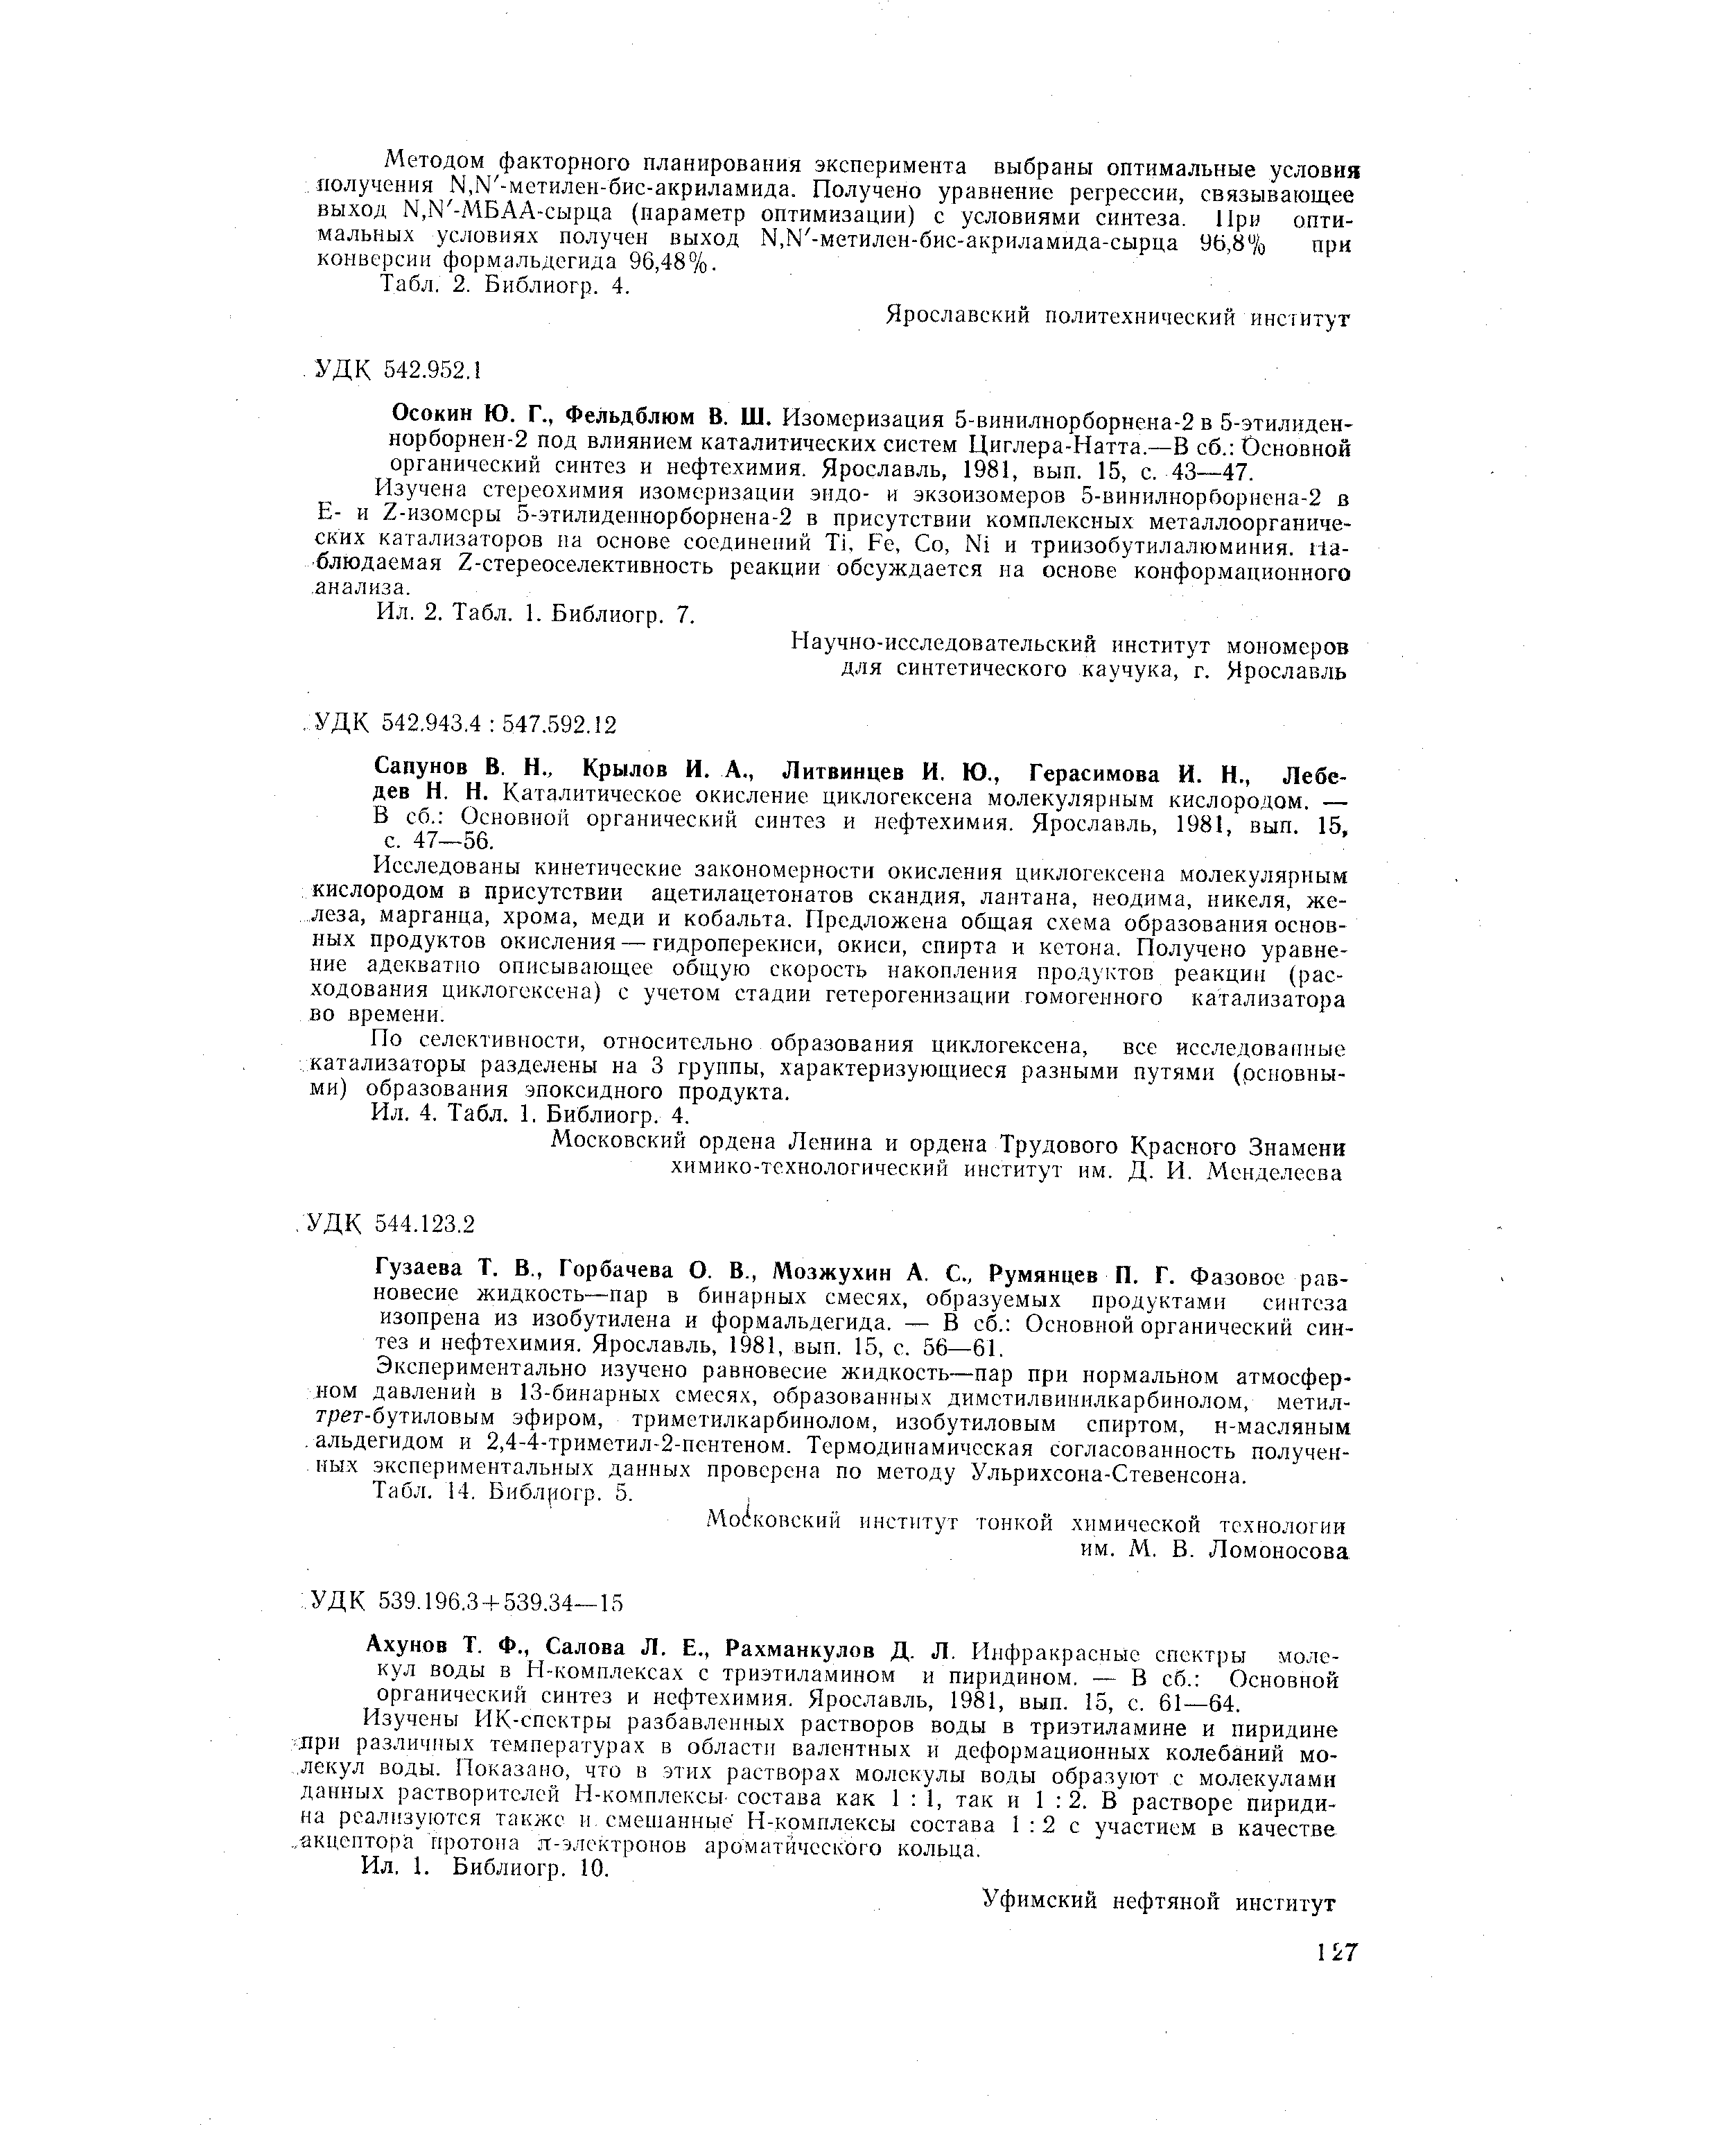 Основной органический синтез и нефтехимия. Ярославль, 1981, вып. 15, с. 47—56.